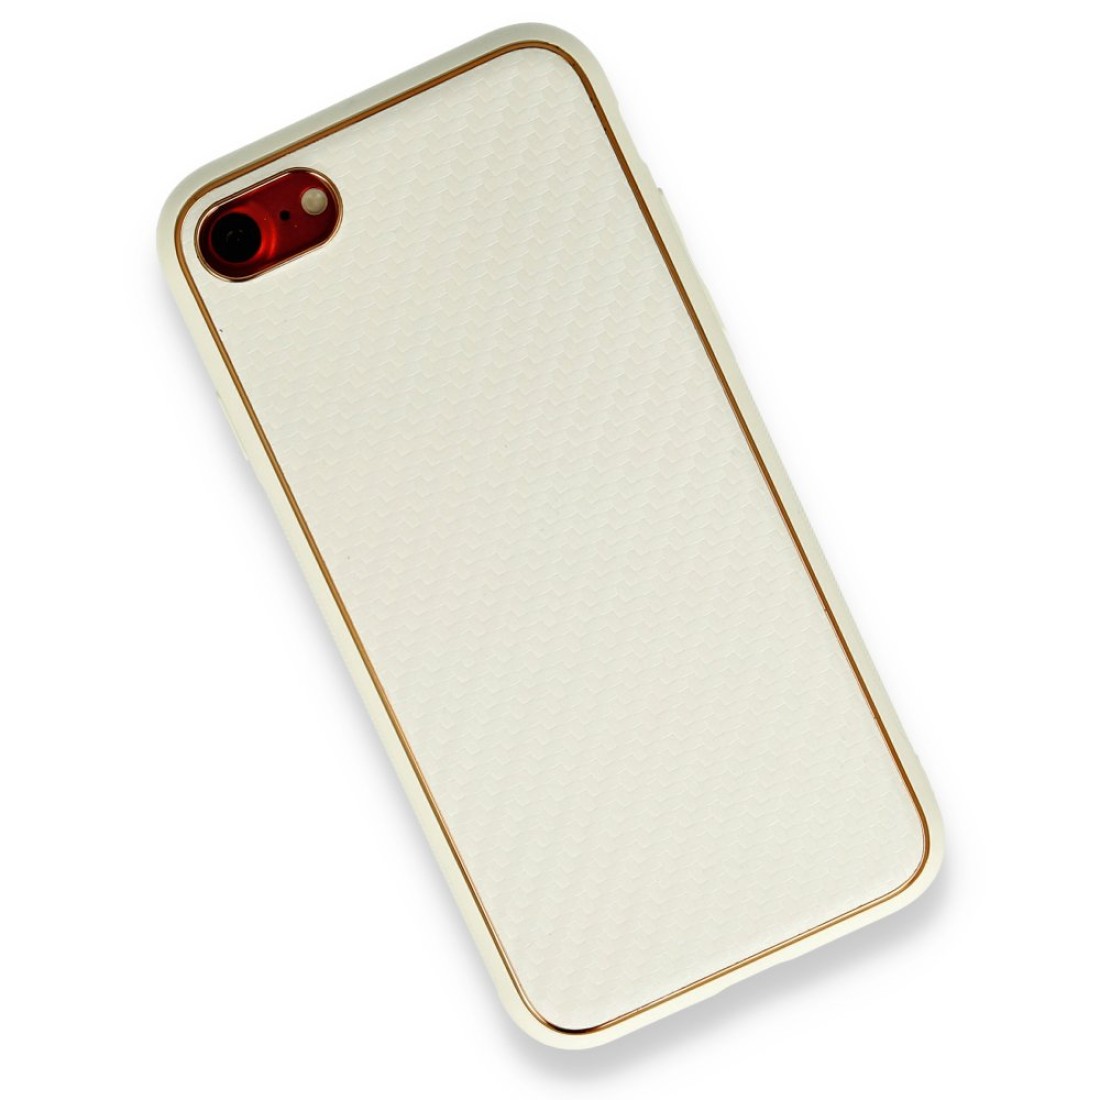 Apple iPhone SE 2020 Kılıf Coco Karbon Silikon - Beyaz